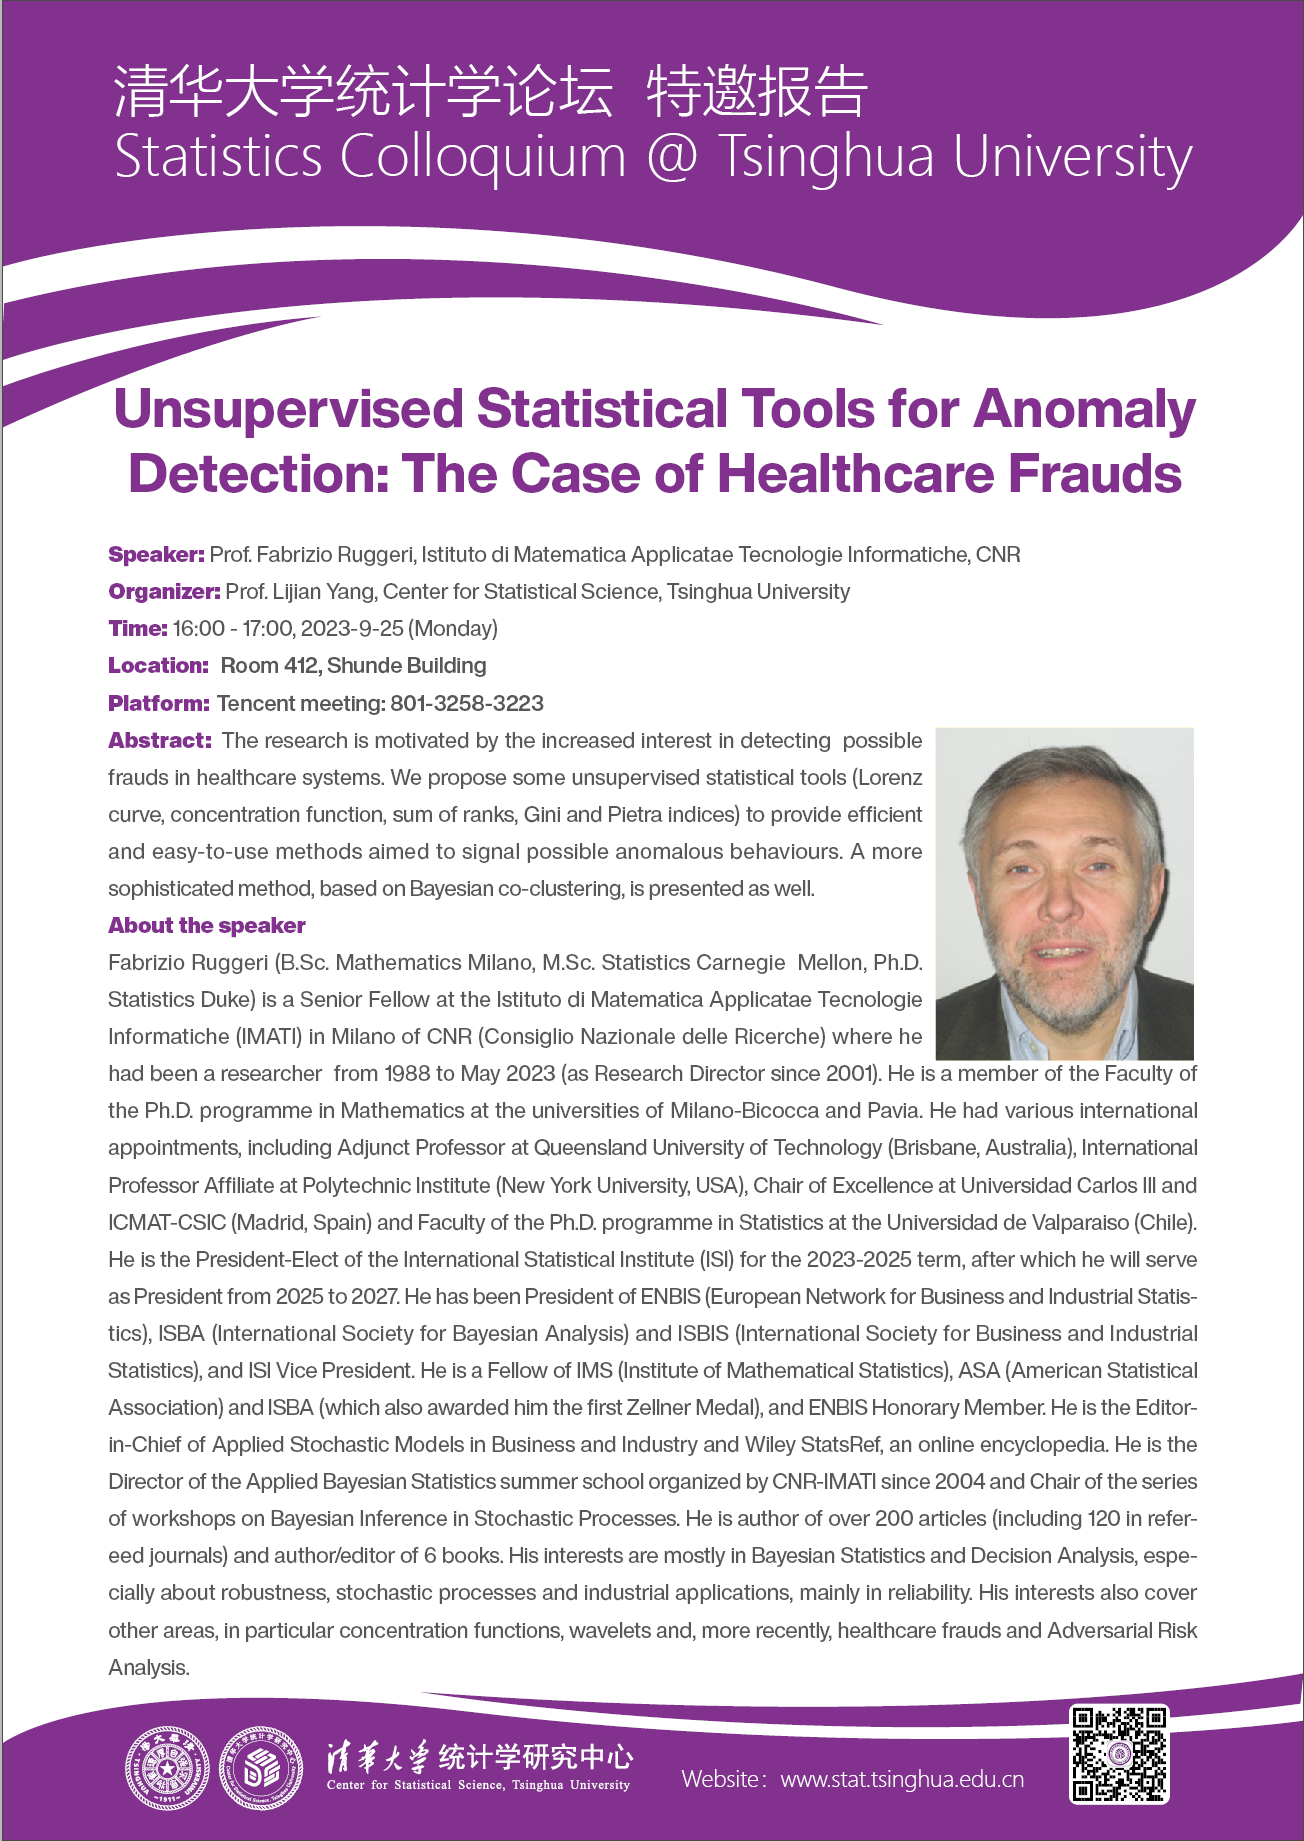 【统计学论坛】Unsupervised Statistical Tools for Anomaly Detection: The Case of Healthcare Frauds